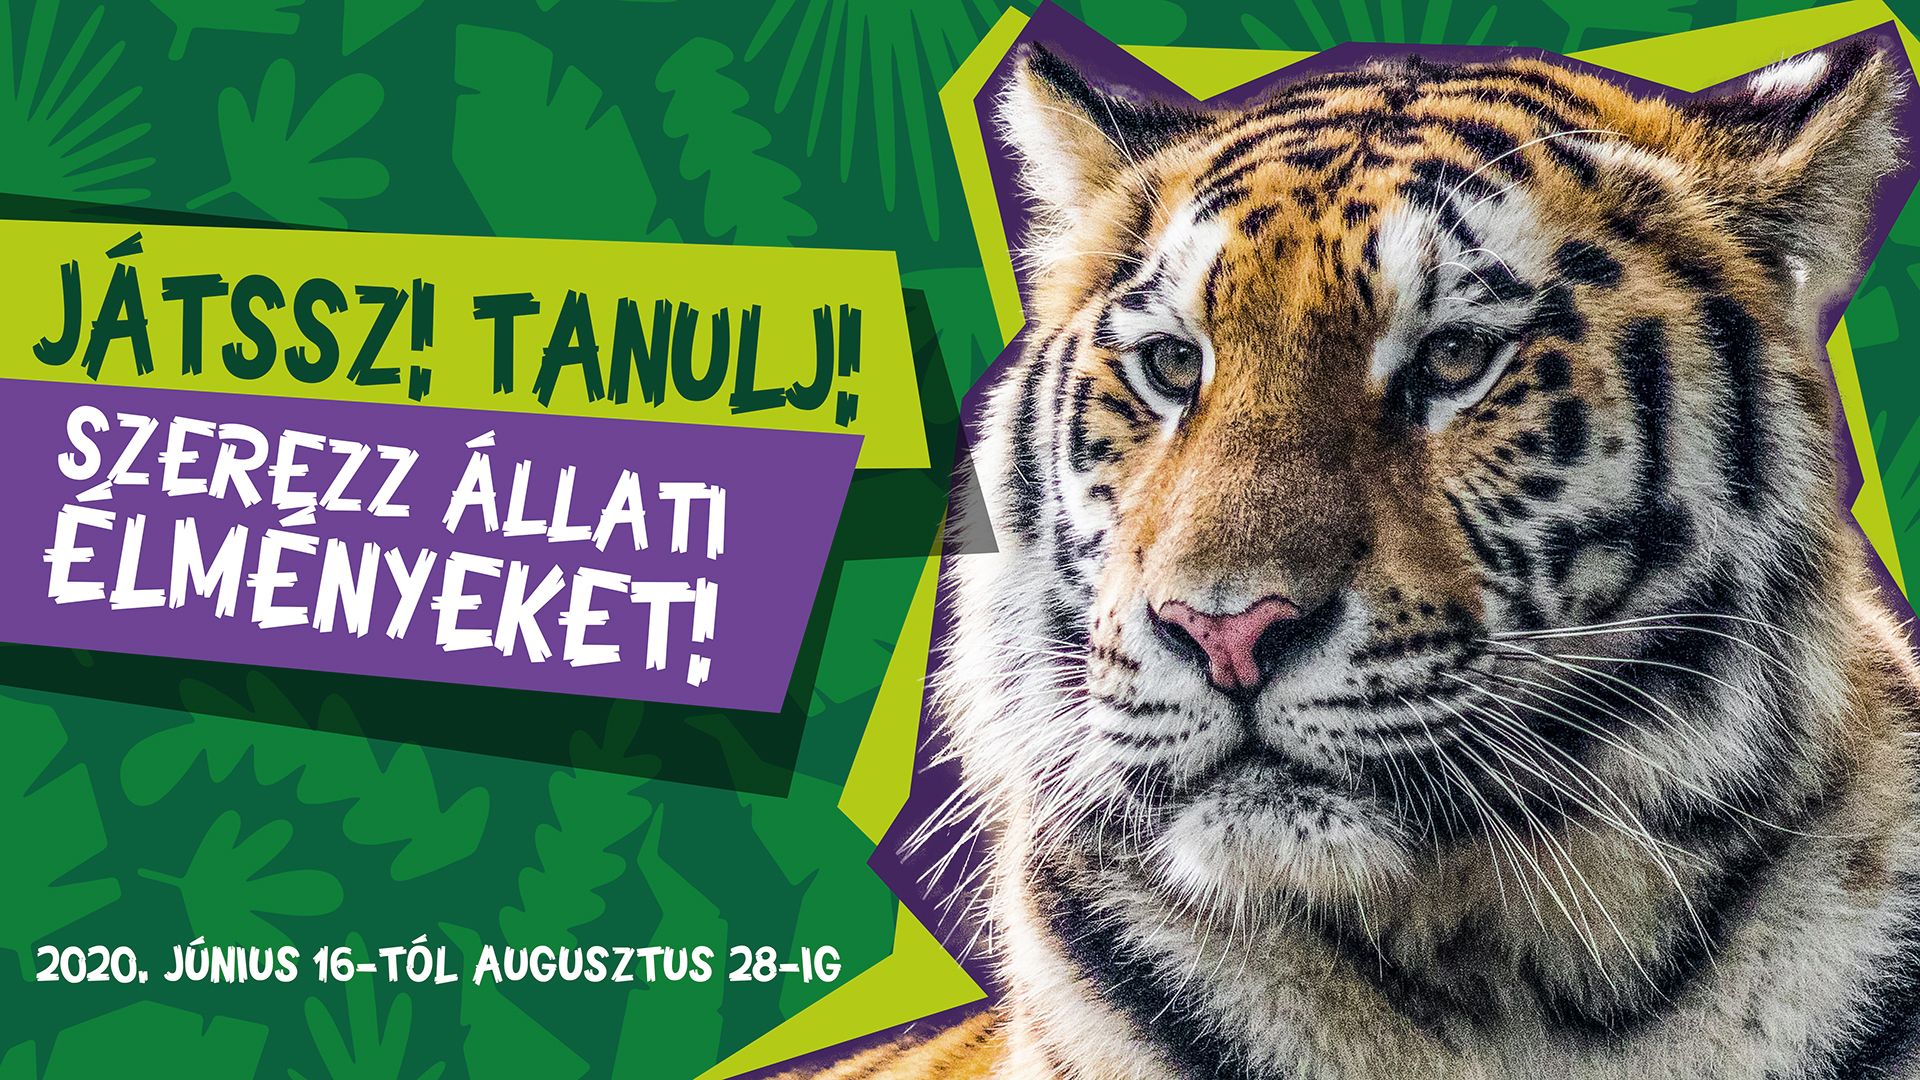 A Debreceni Zootábor idén is felejthetetlen élményeket kínál a nyárra!!